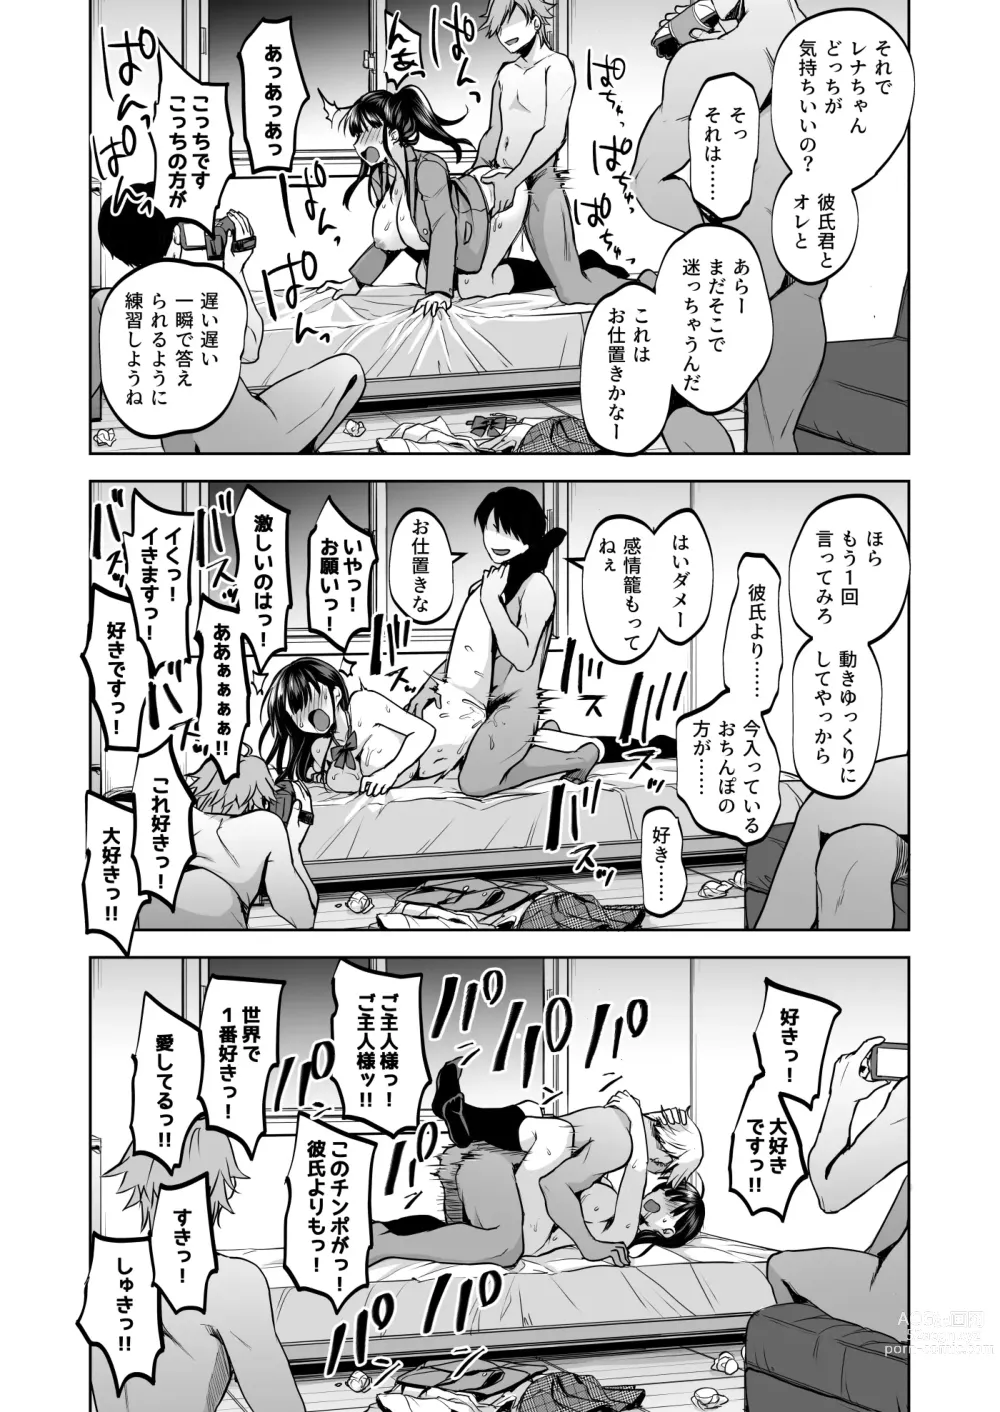 Page 72 of doujinshi Omoide wa Yogosareru 2 ~Kokoro made Somerarete~